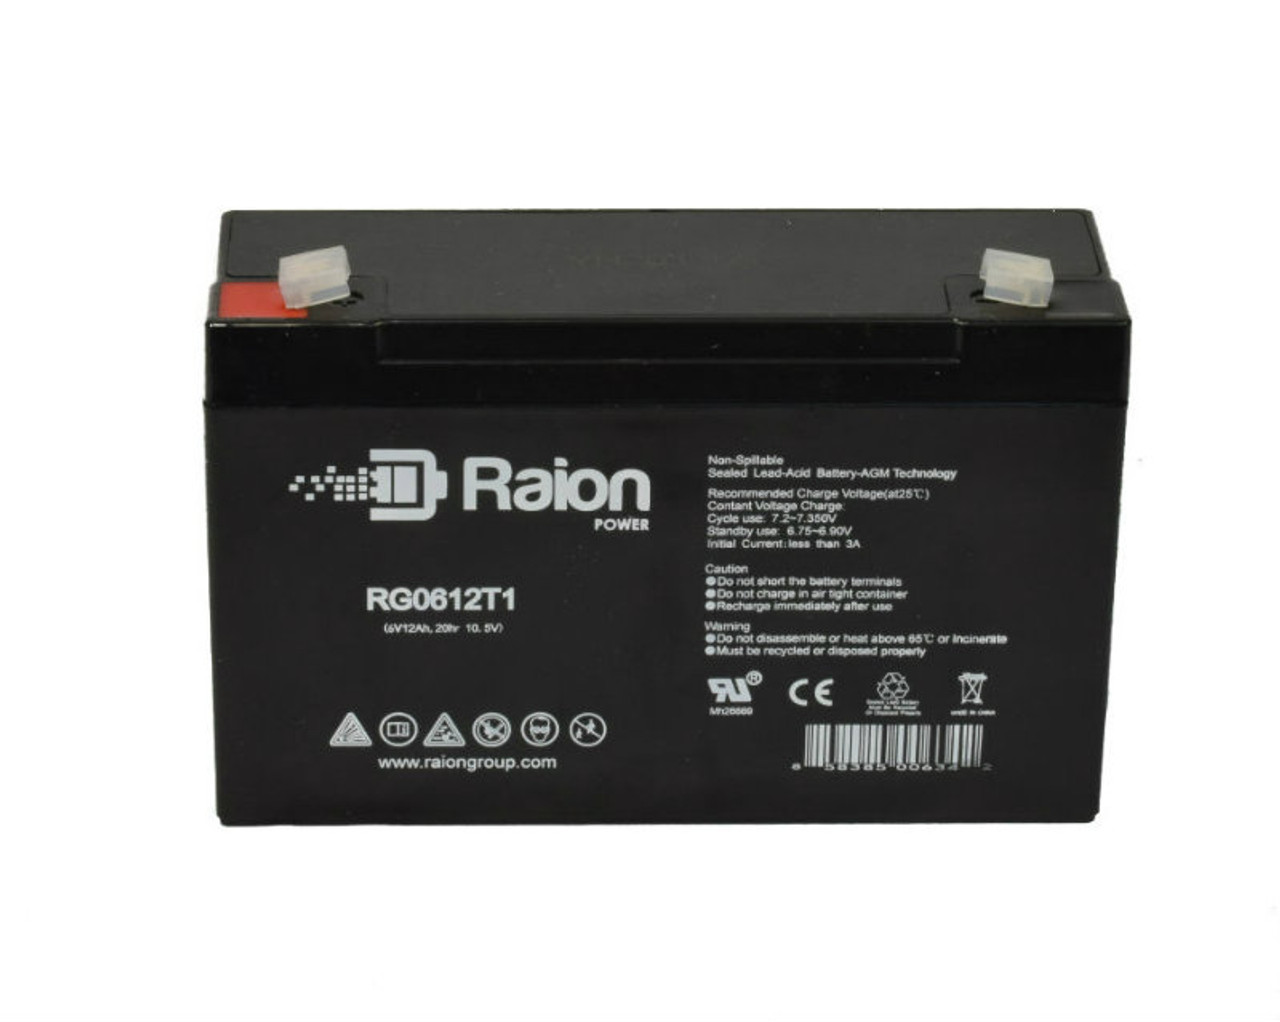 Raion Power RG06120T1 SLA Battery for Kinghero SJ6V12Ah